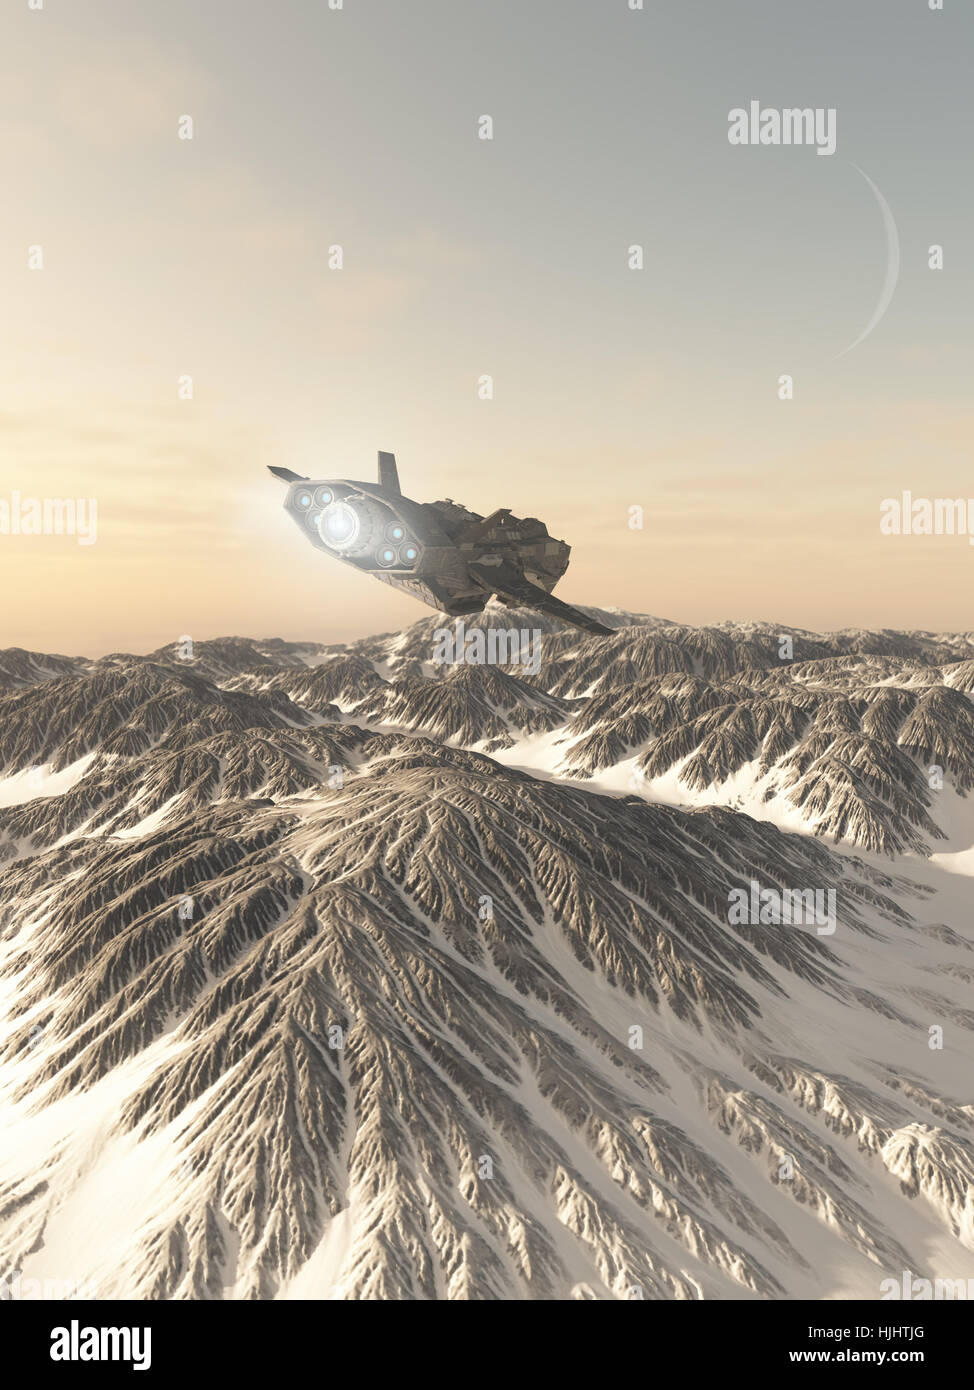 Interplanetarische Raumschiff fliegen über Schnee bedeckte Berge - Science-Fiction-Abbildung Stockfoto